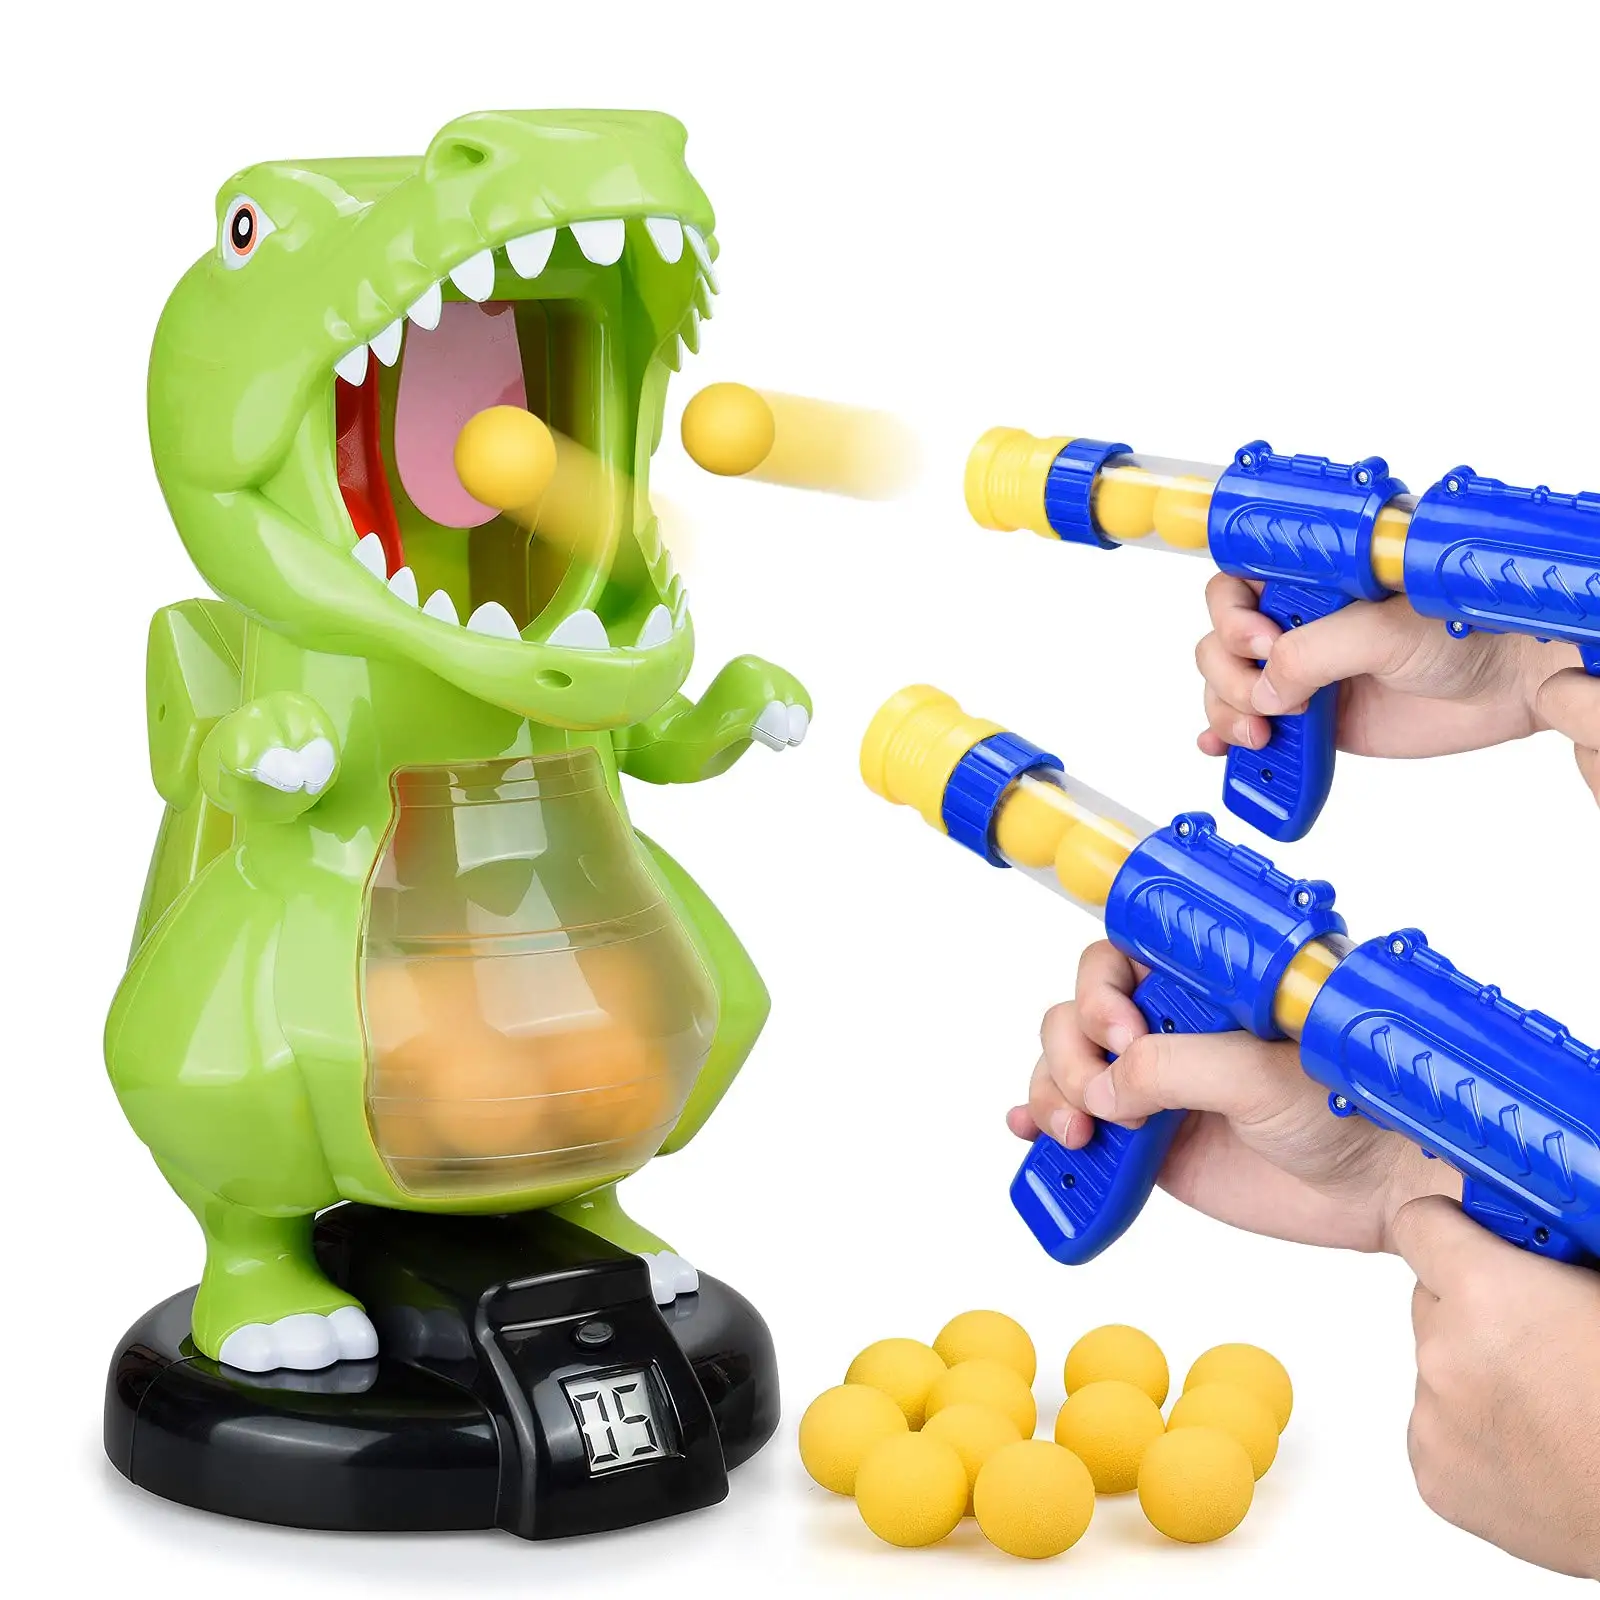 2〜13歳の男の子と女の子の楽しい子供のおもちゃのための高品質の恐竜シューティングゲーム